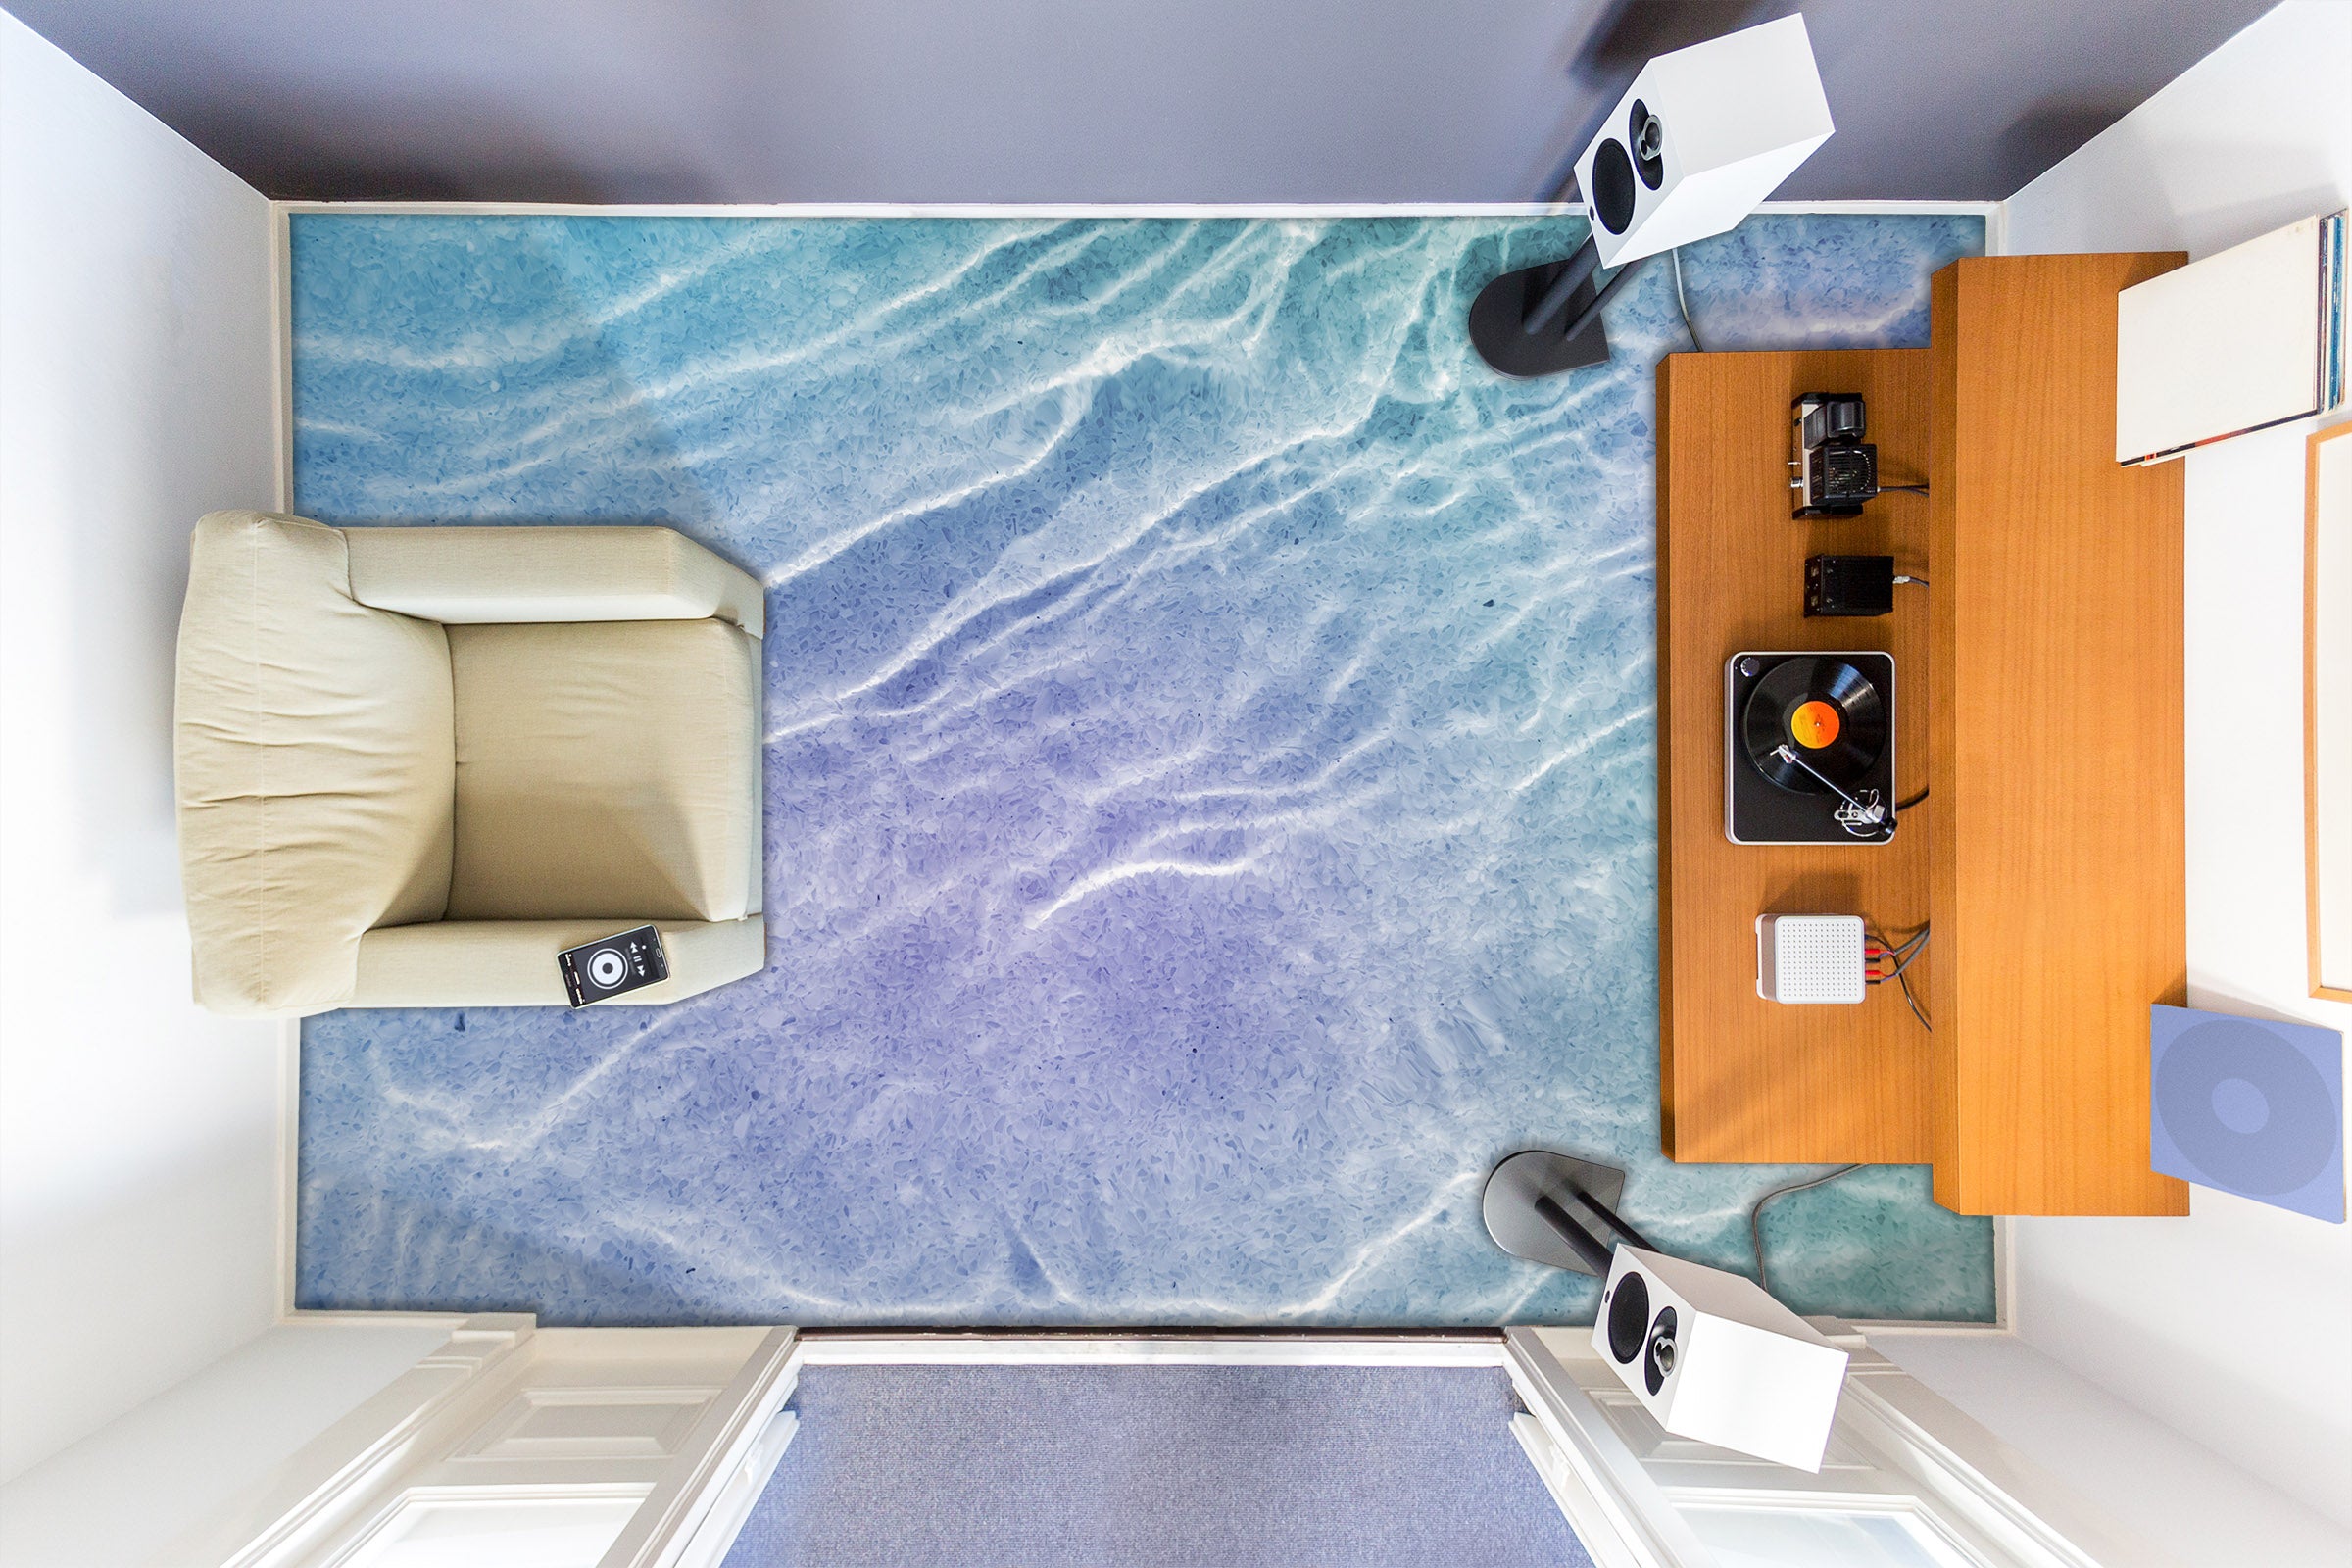 3D Light Purple Sea Dream 739 Floor Mural  Wallpaper Murals Rug & Mat Print Epoxy waterproof bath floor